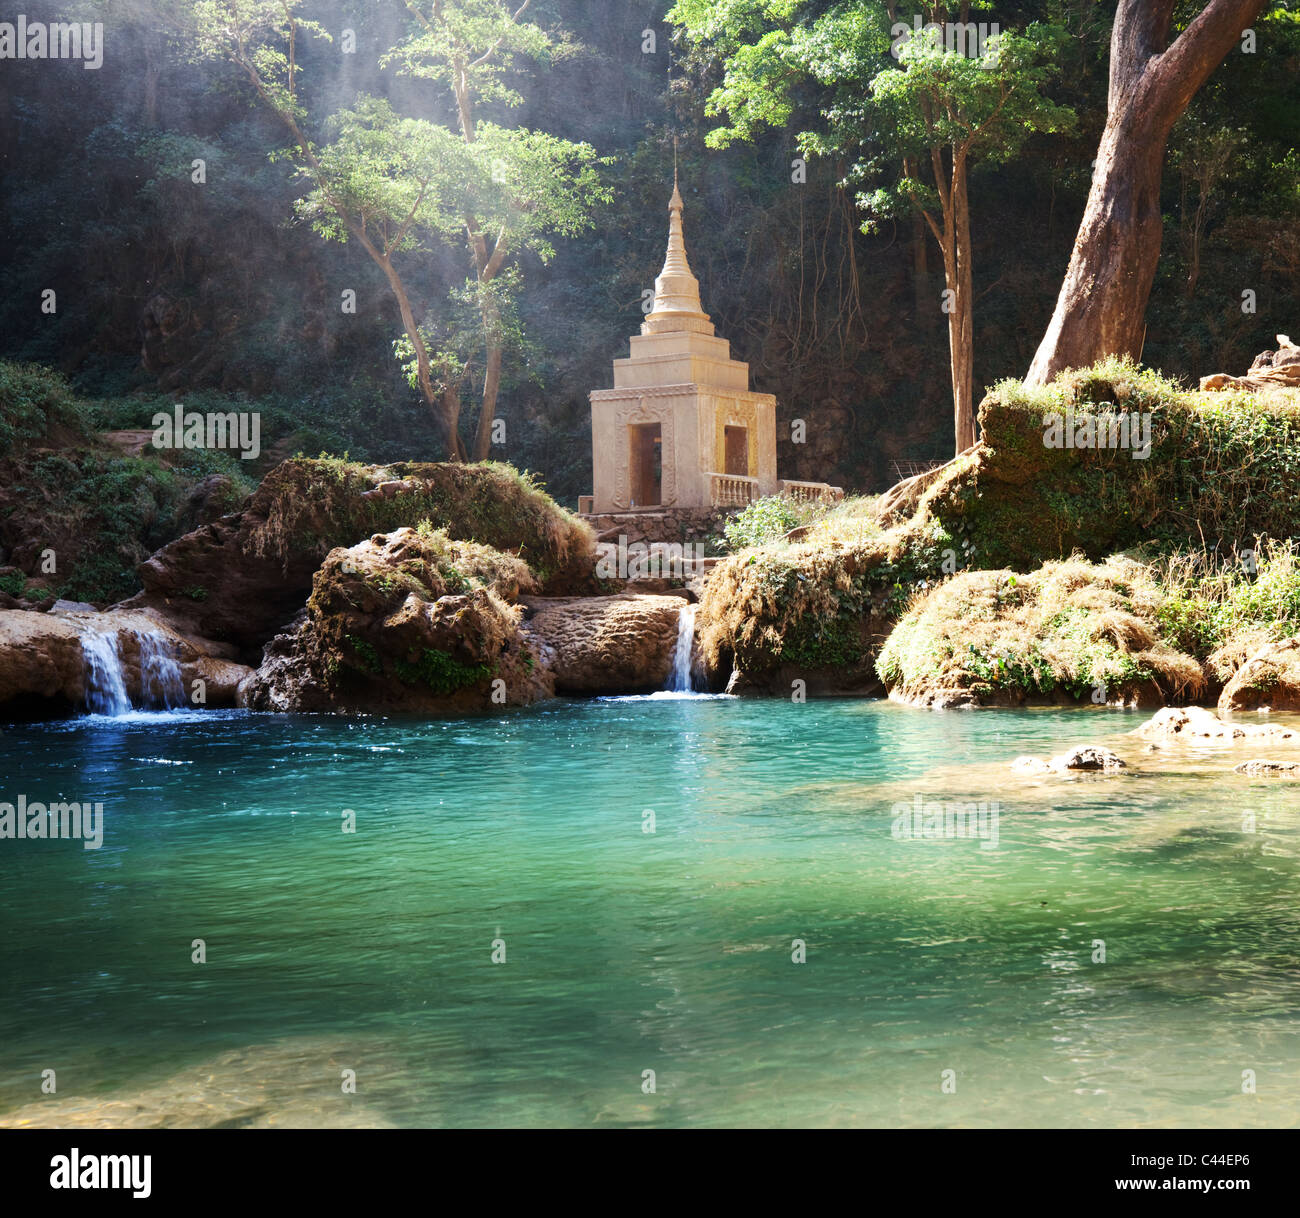 Anisakan cascata e un tempio buddista nel cuore della giungla nella Birmania settentrionale. Foto Stock